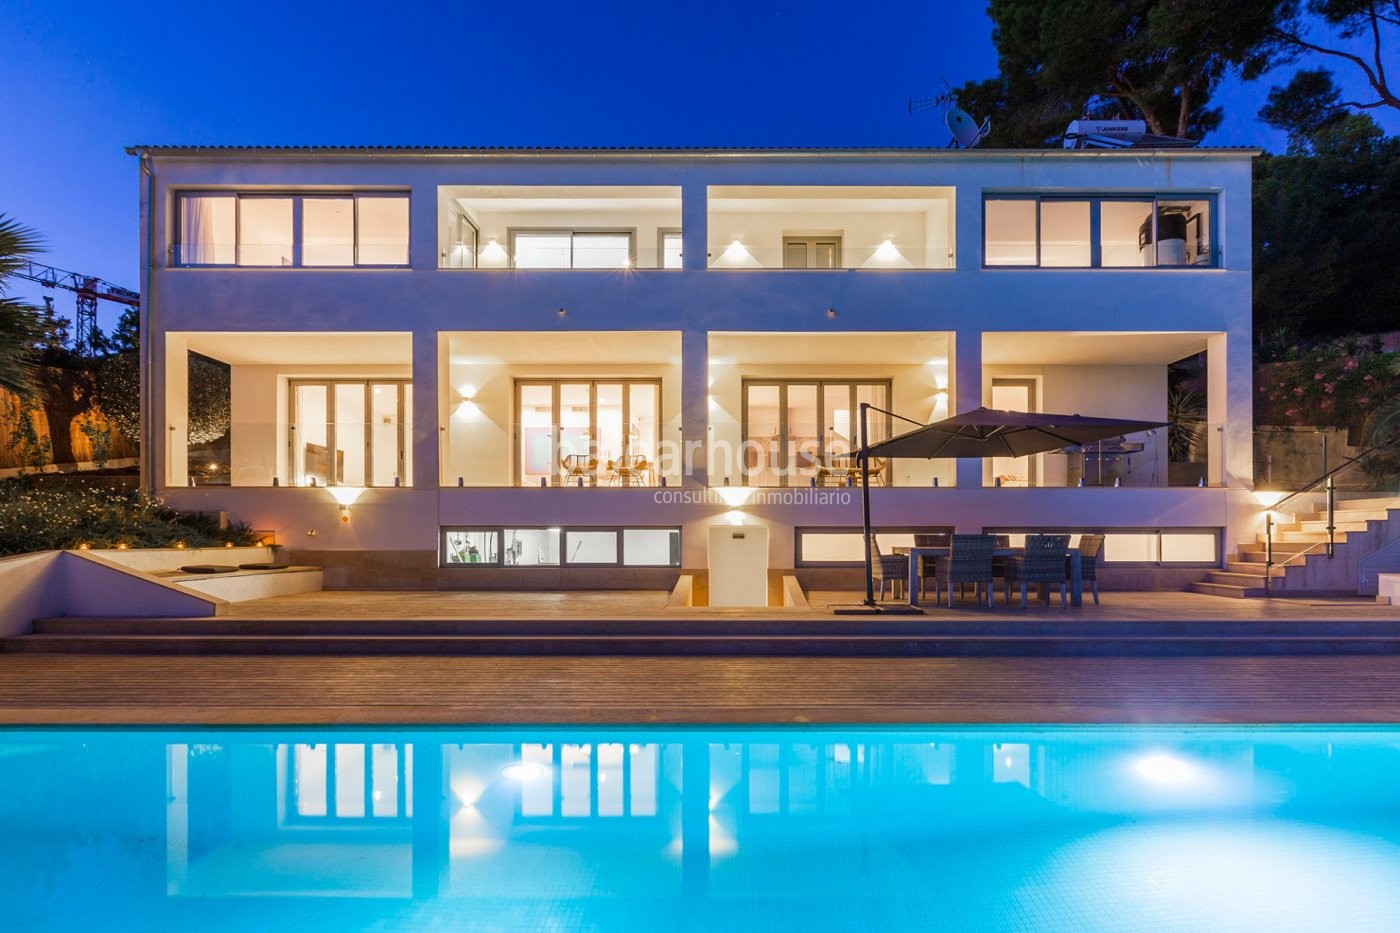 Excelente reforma de esta villa en Costa d'en Blanes con piscina, jardín y bonitas vistas al mar.